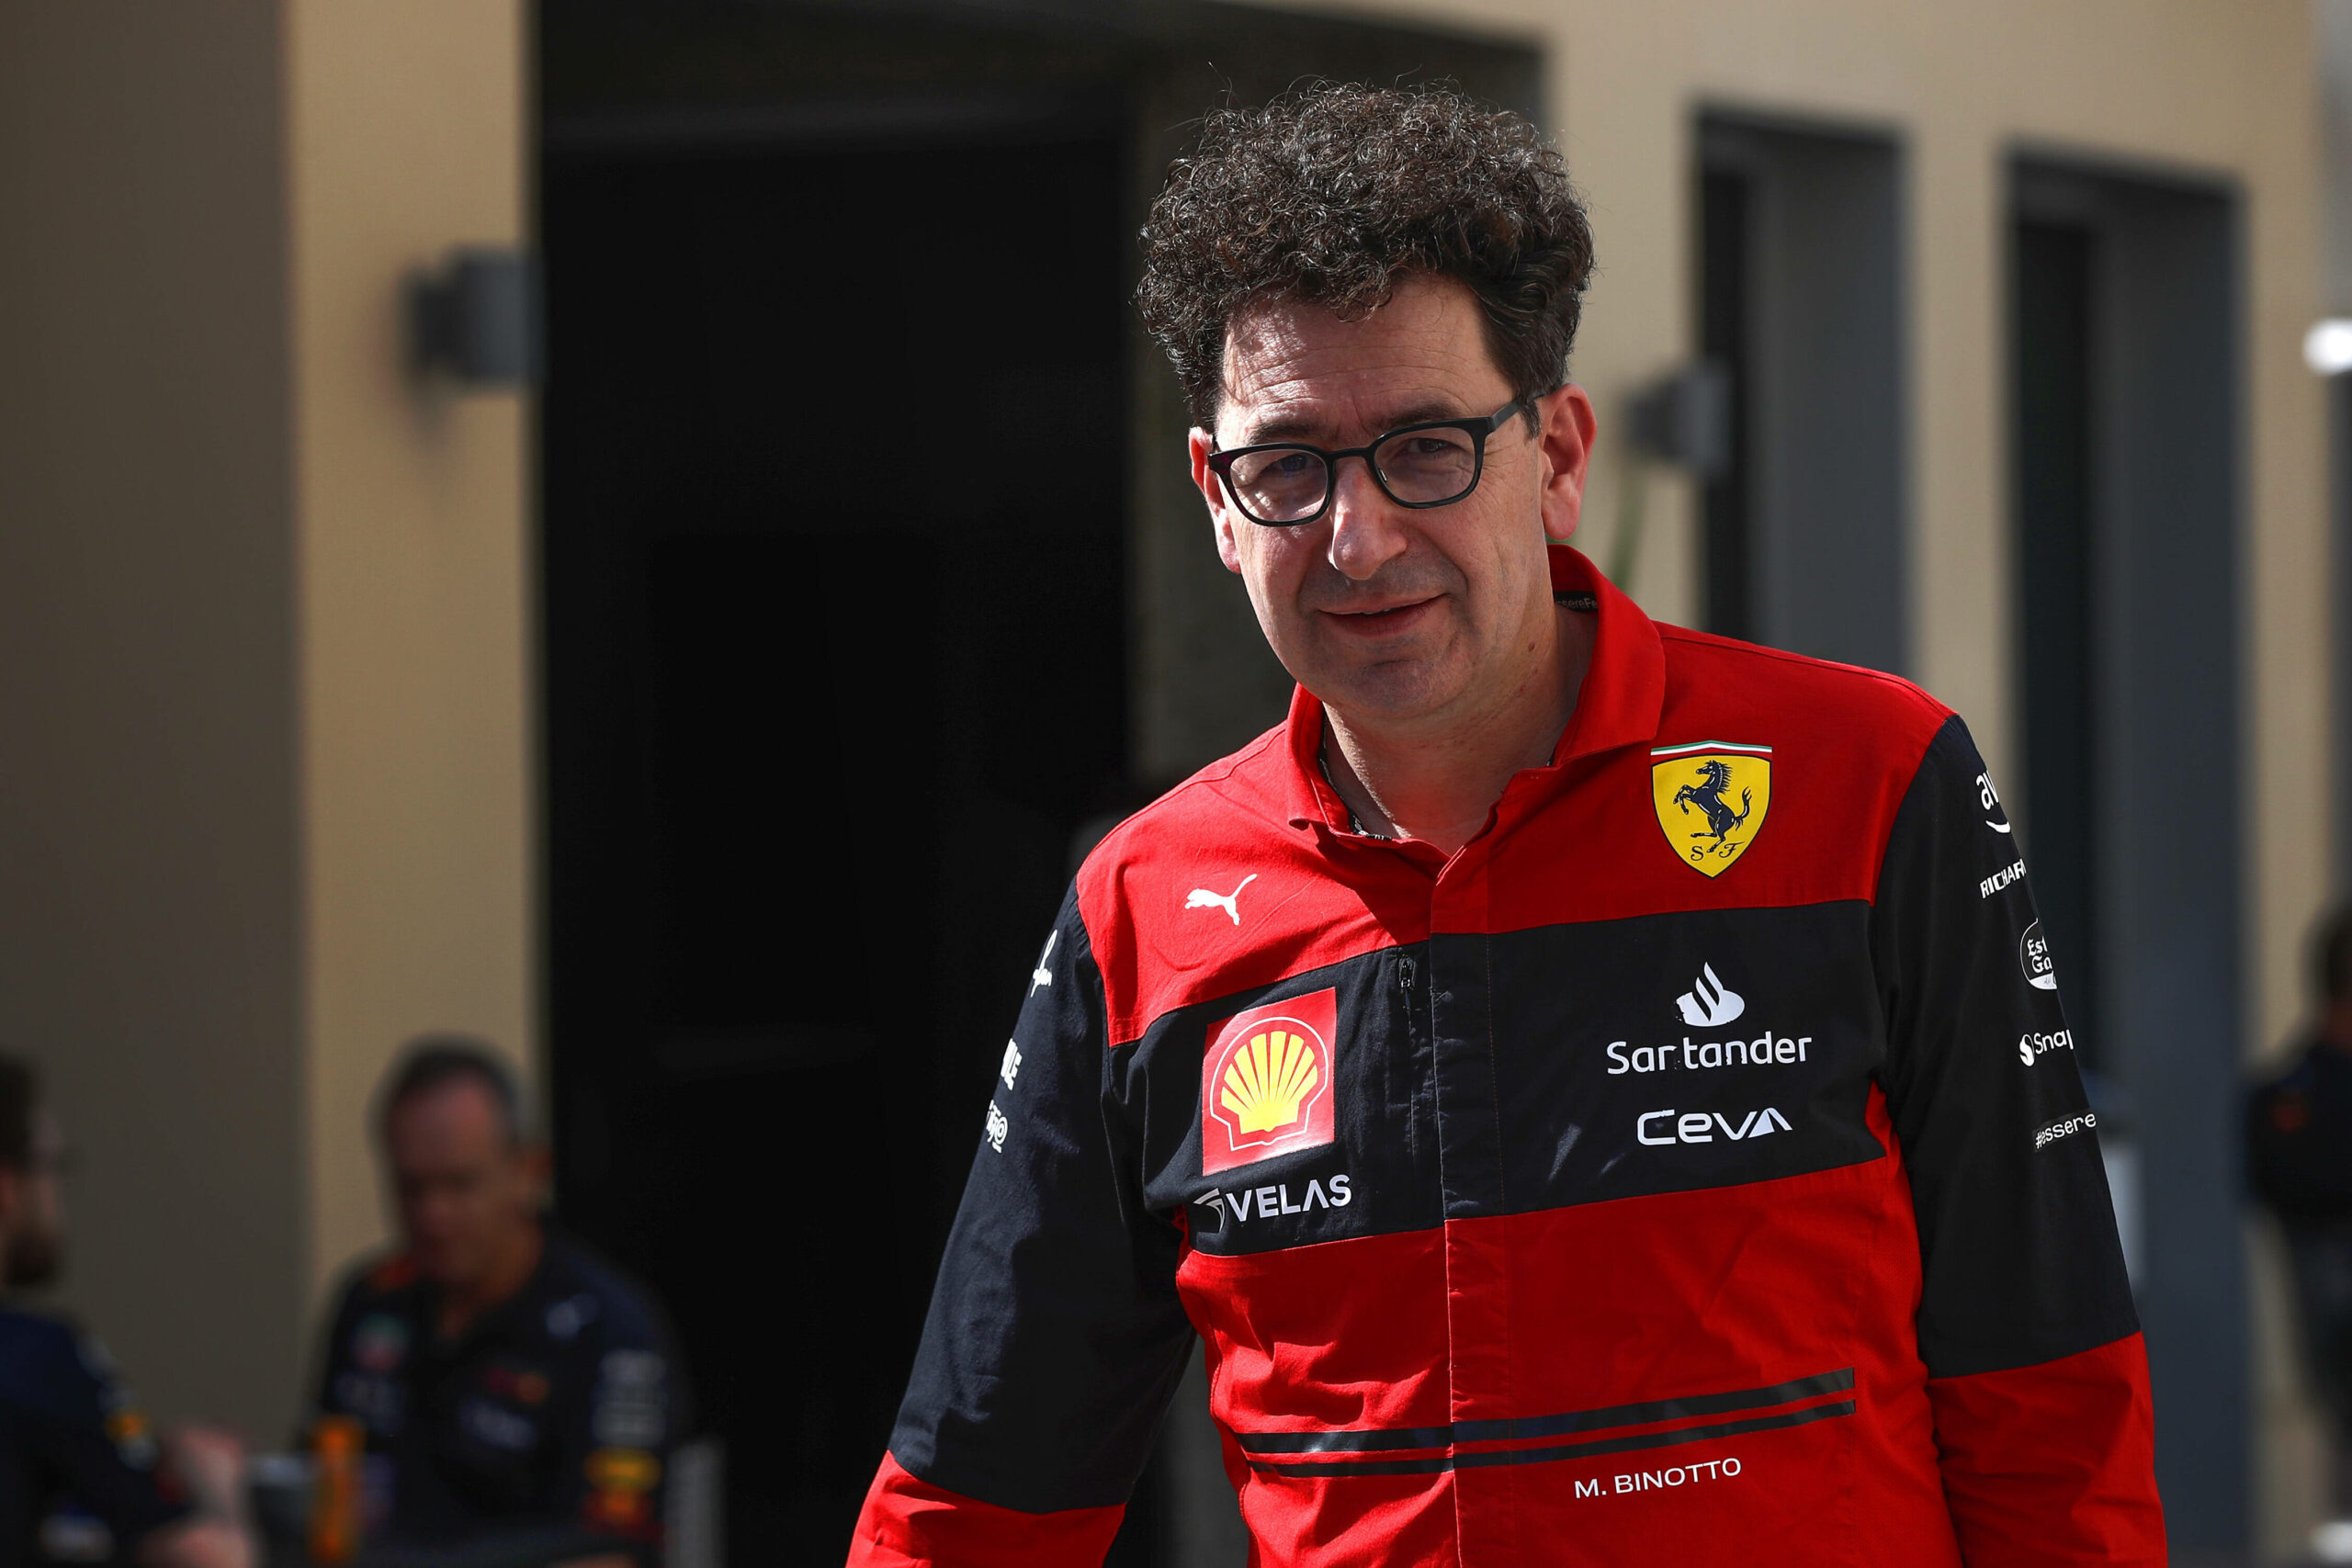 Ab kommendem Jahr nicht mehr Teamchef bei Ferrari: Mattia Binotto